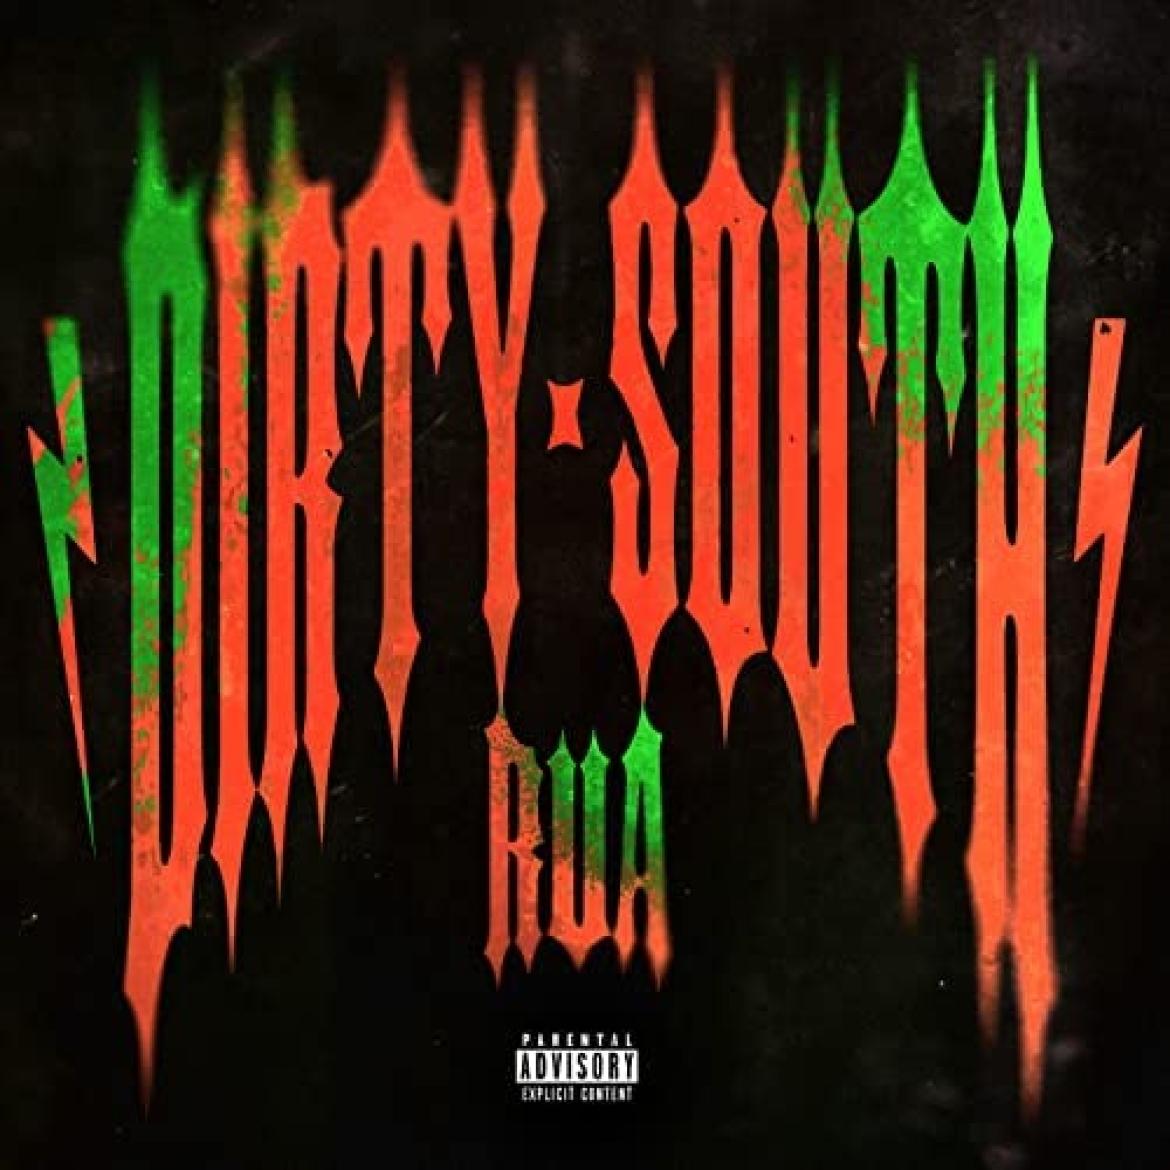 Rua Album: "Dirty South"